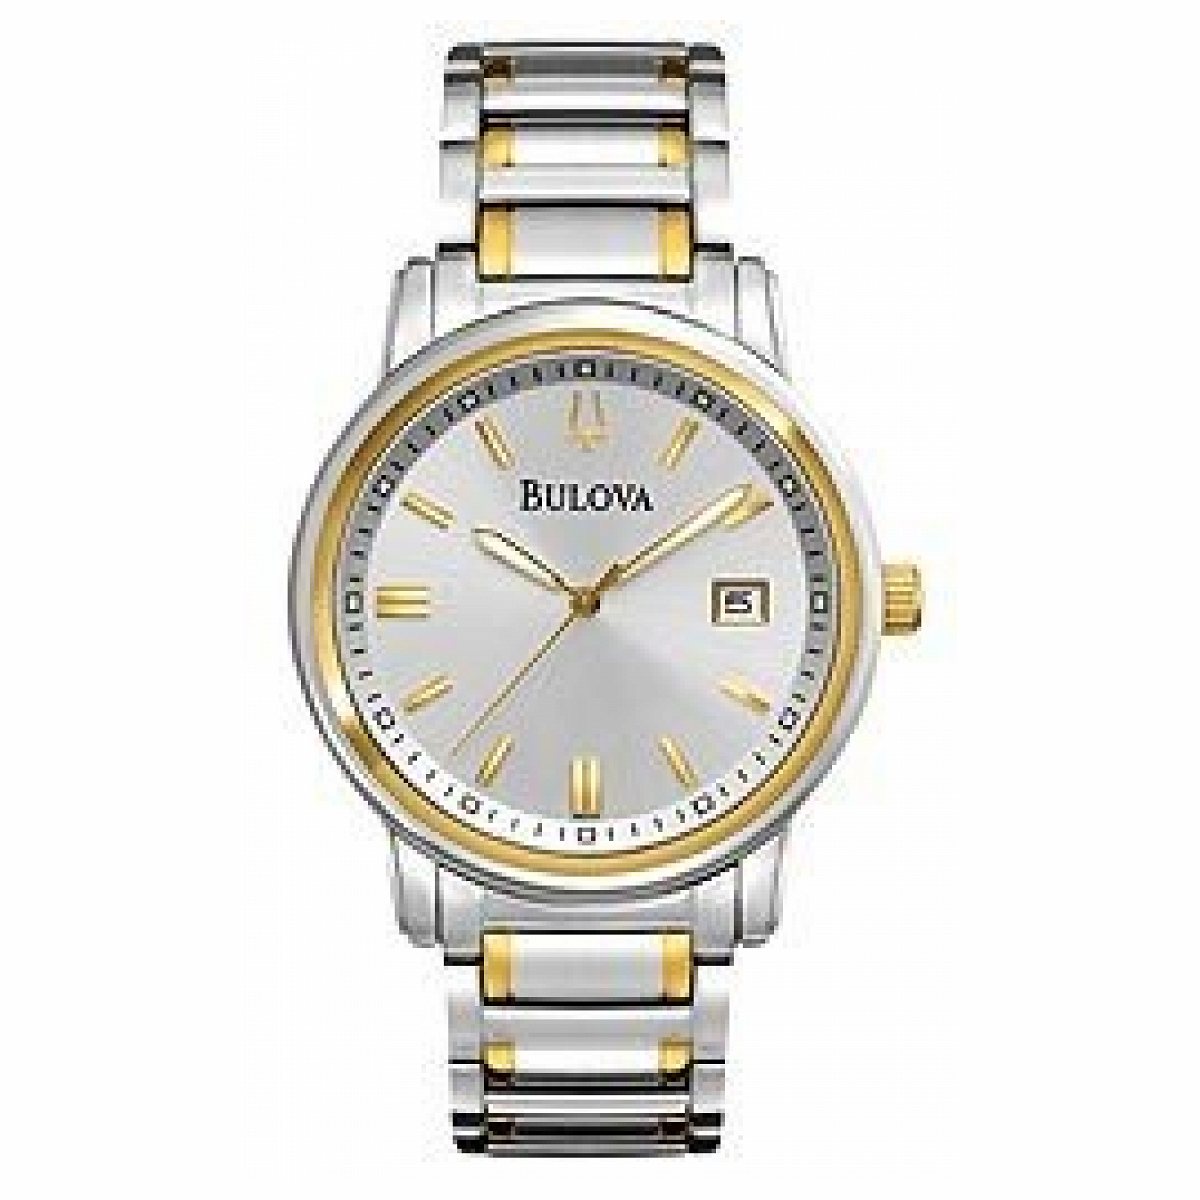 Bulova Bracelet Silver-Tone Dial Men's Watch #98B157